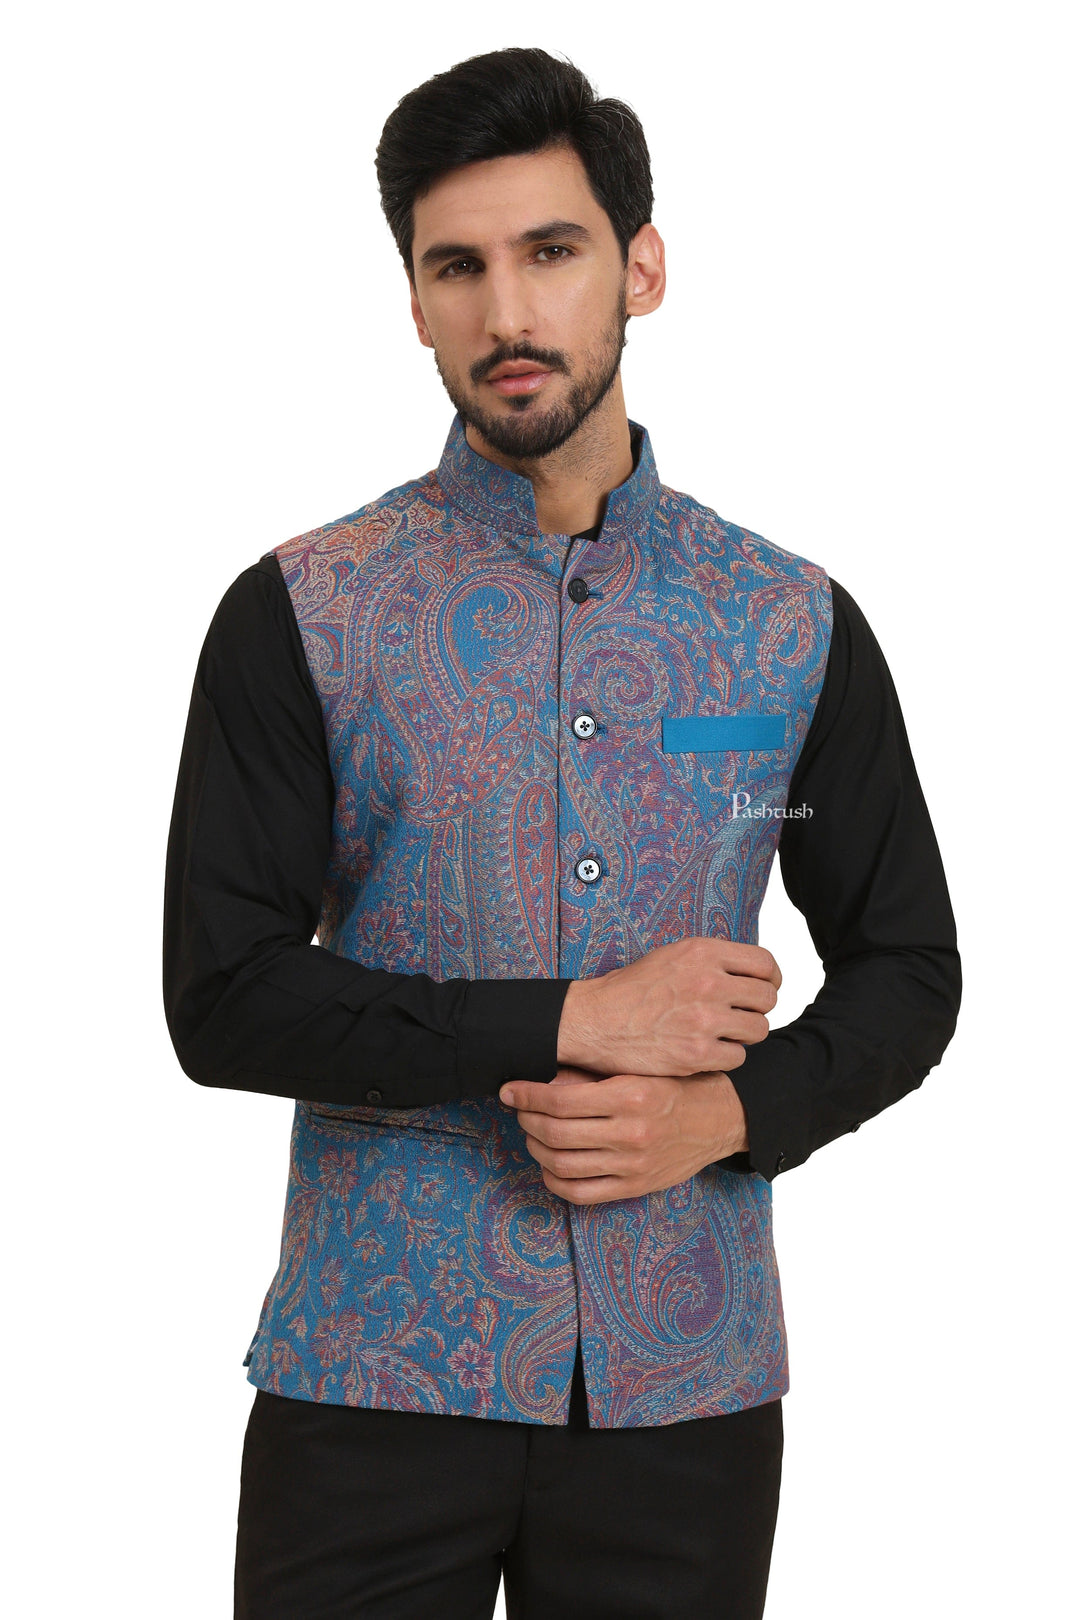 Pashtush India Coats & Jackets Pashtush Mens Woven Jacquard Waistcoat, Structured Slim Fit, Sapphire Blue